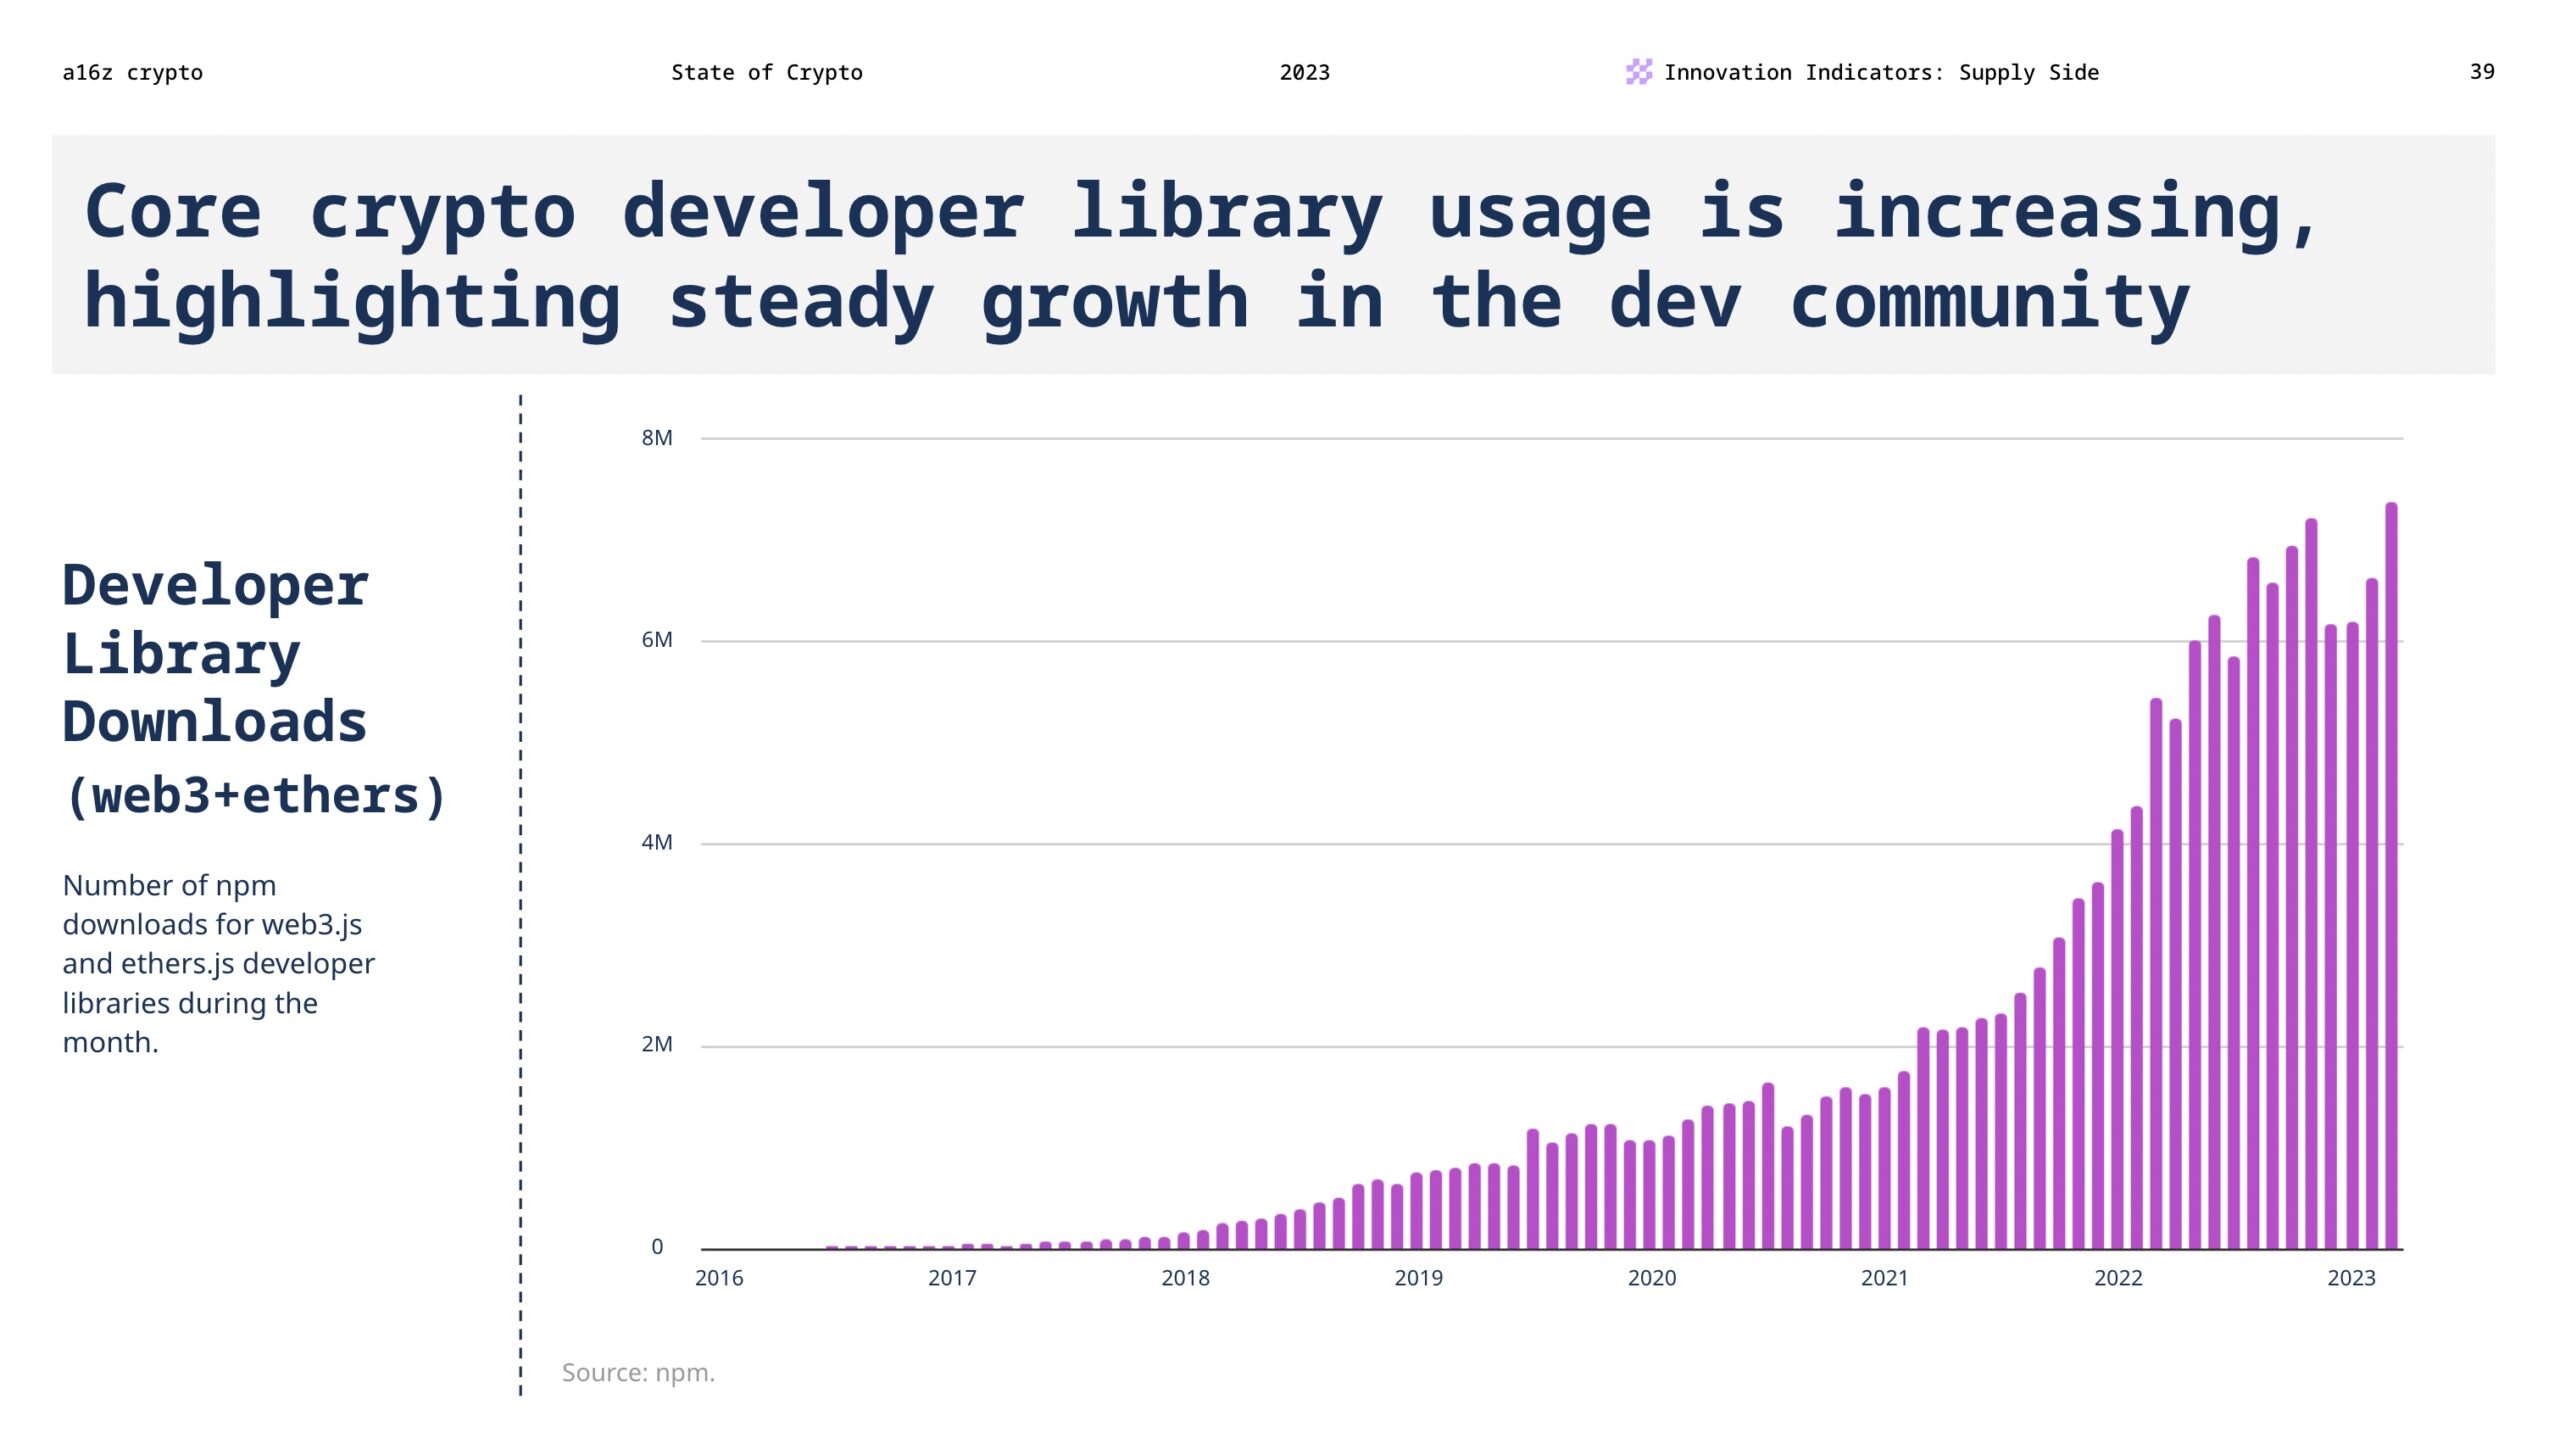 Het gebruik van de kerncrypto-ontwikkelaarsbibliotheek neemt toe, wat wijst op een gestage groei in de gemeenschap